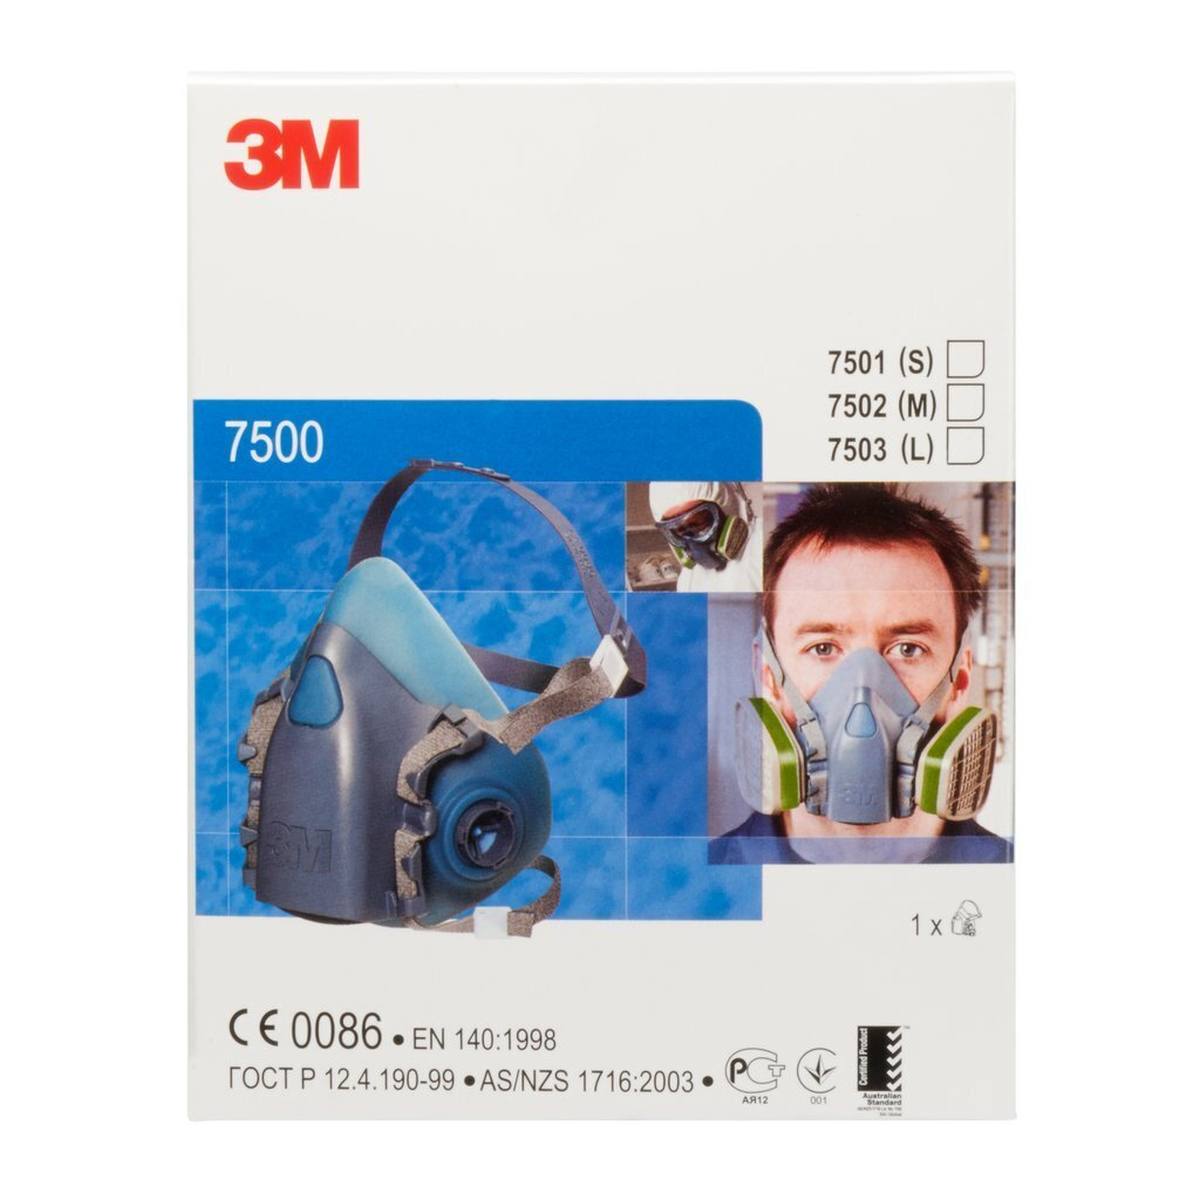 3M 7503L Halfgelaatsmasker lichaam silicone / thermoplastisch polyester maat L